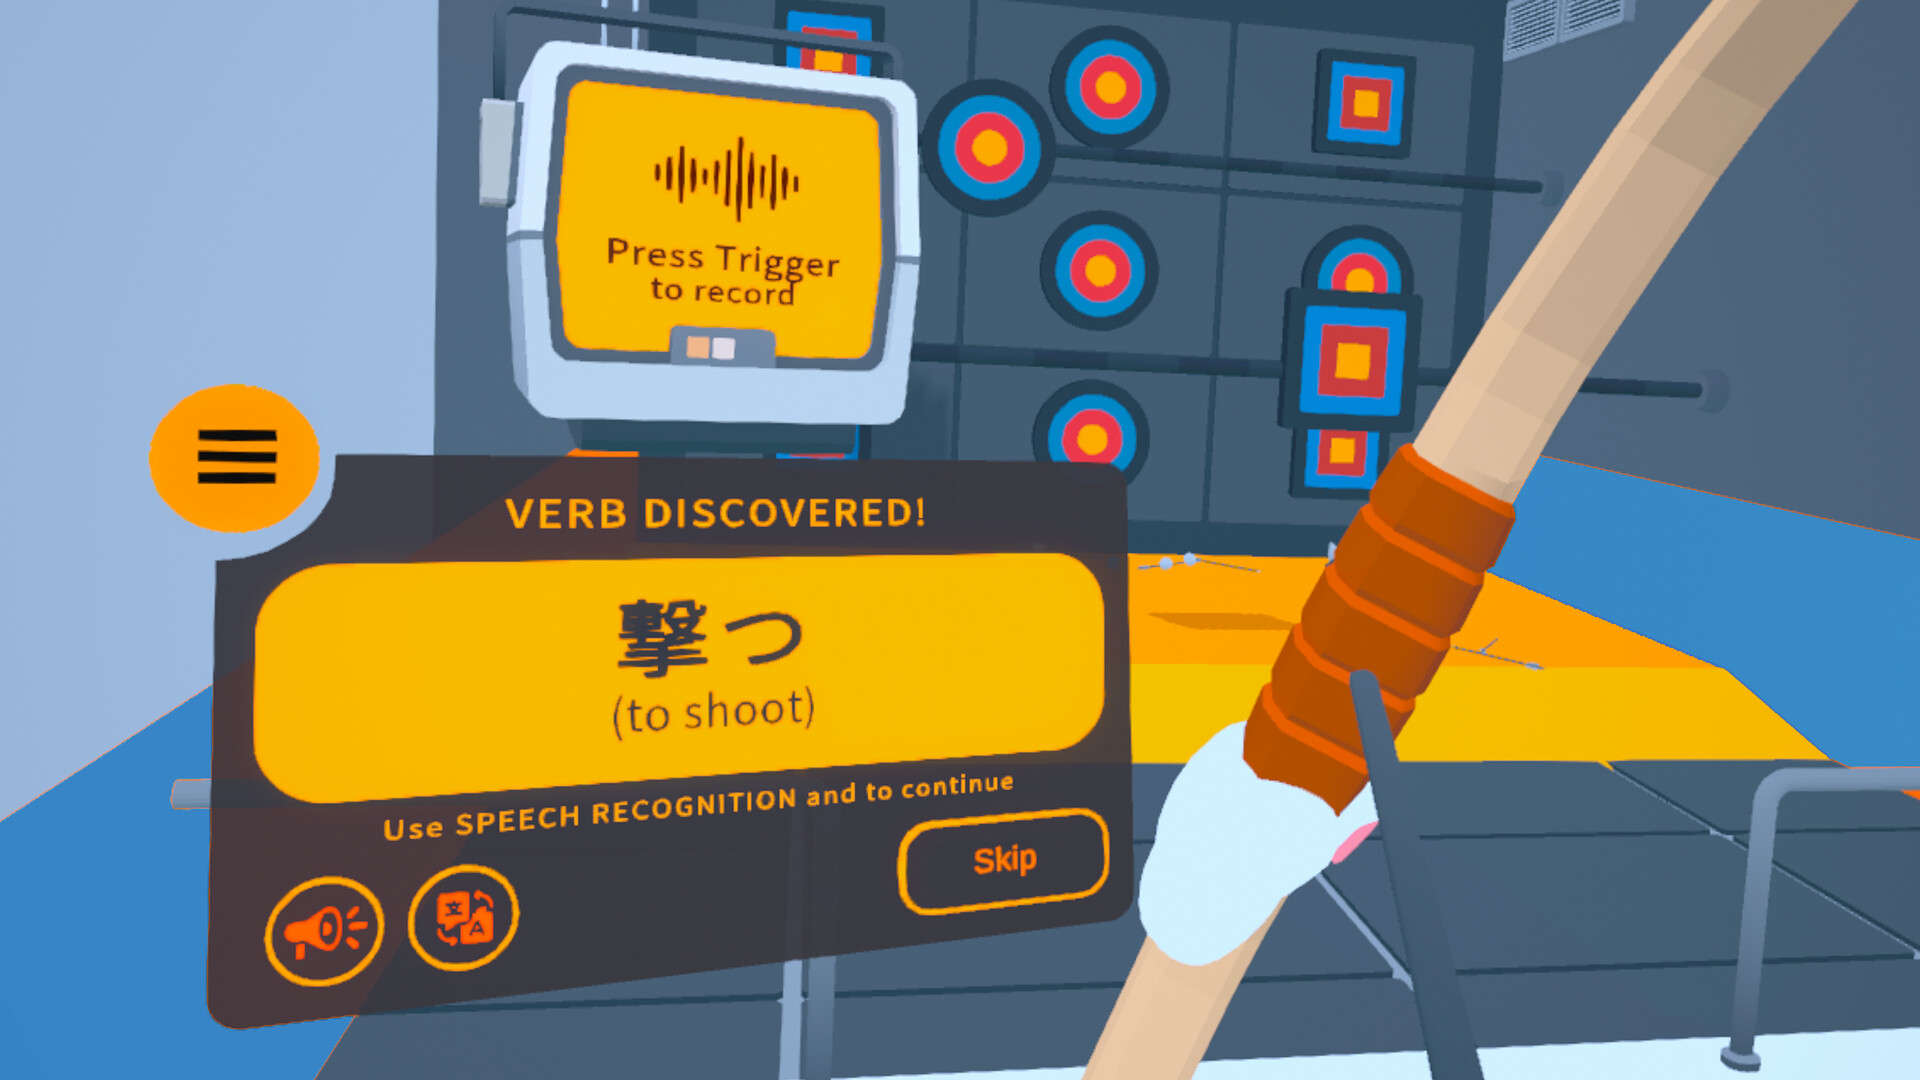 Noun Town: VR Language Learning